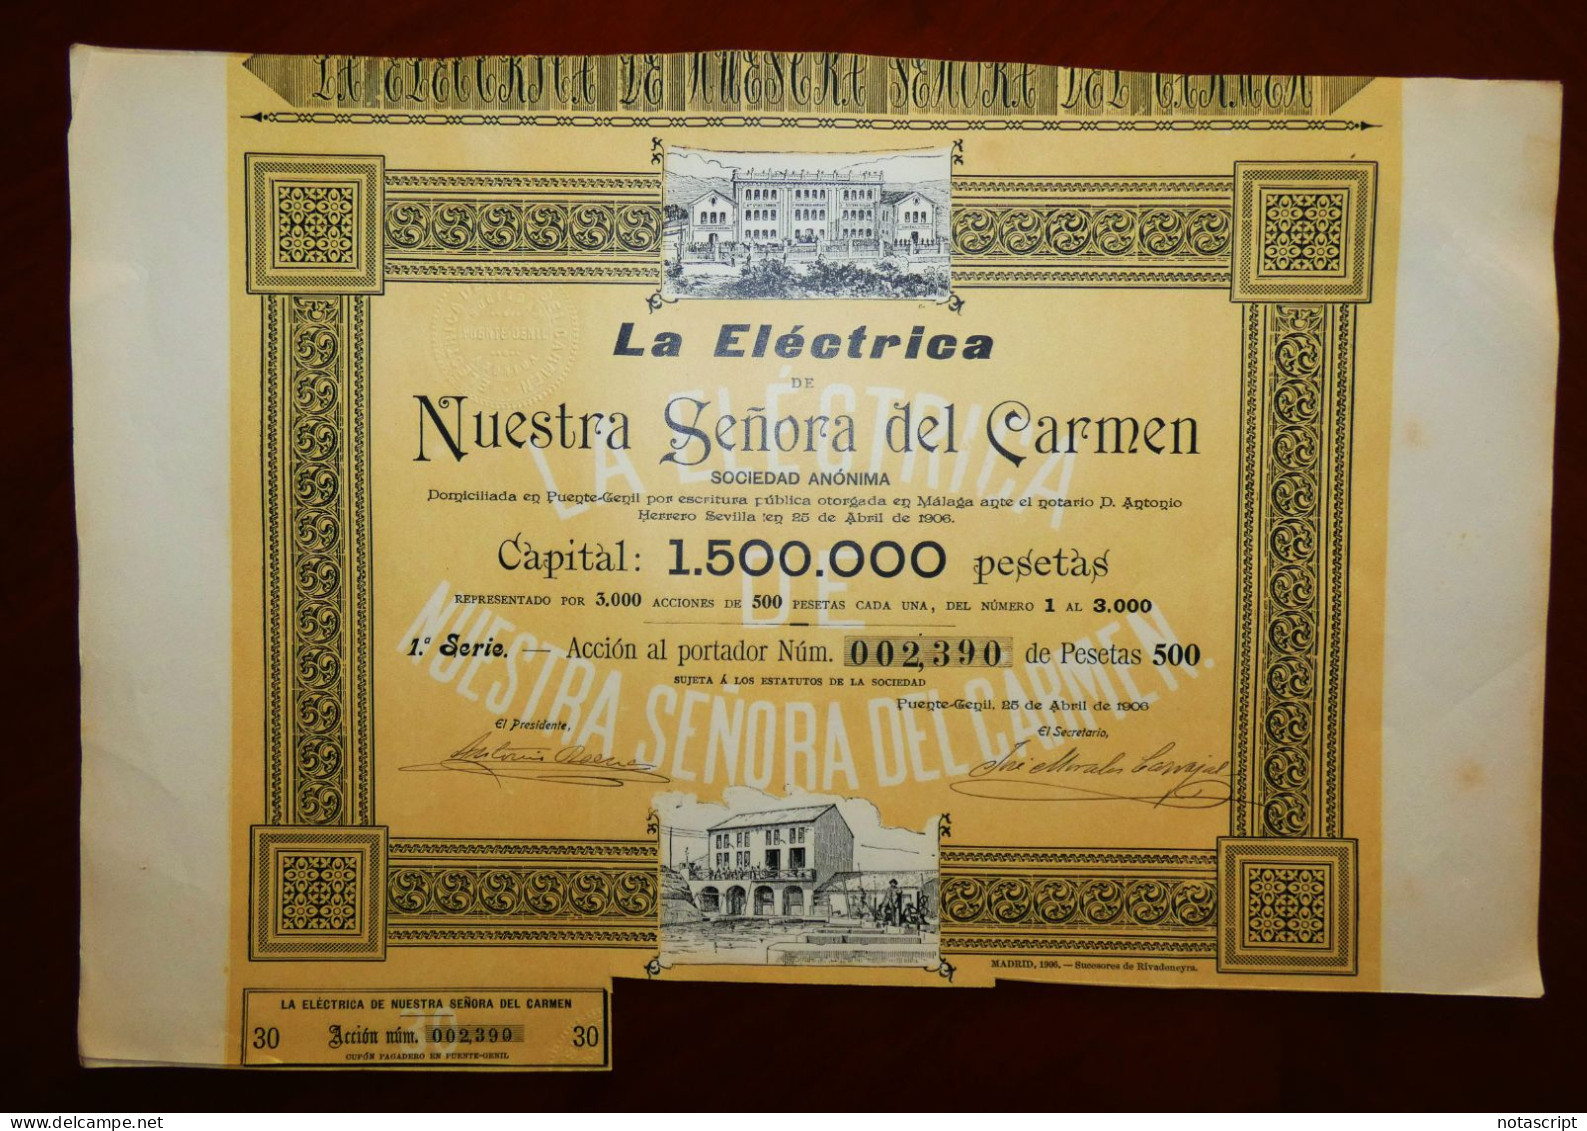 La Eléctrica De Nuestra Señora Del Carmen SA Puente Genil, Córdoba, Spain 1906 Share Certificate - Electricidad & Gas